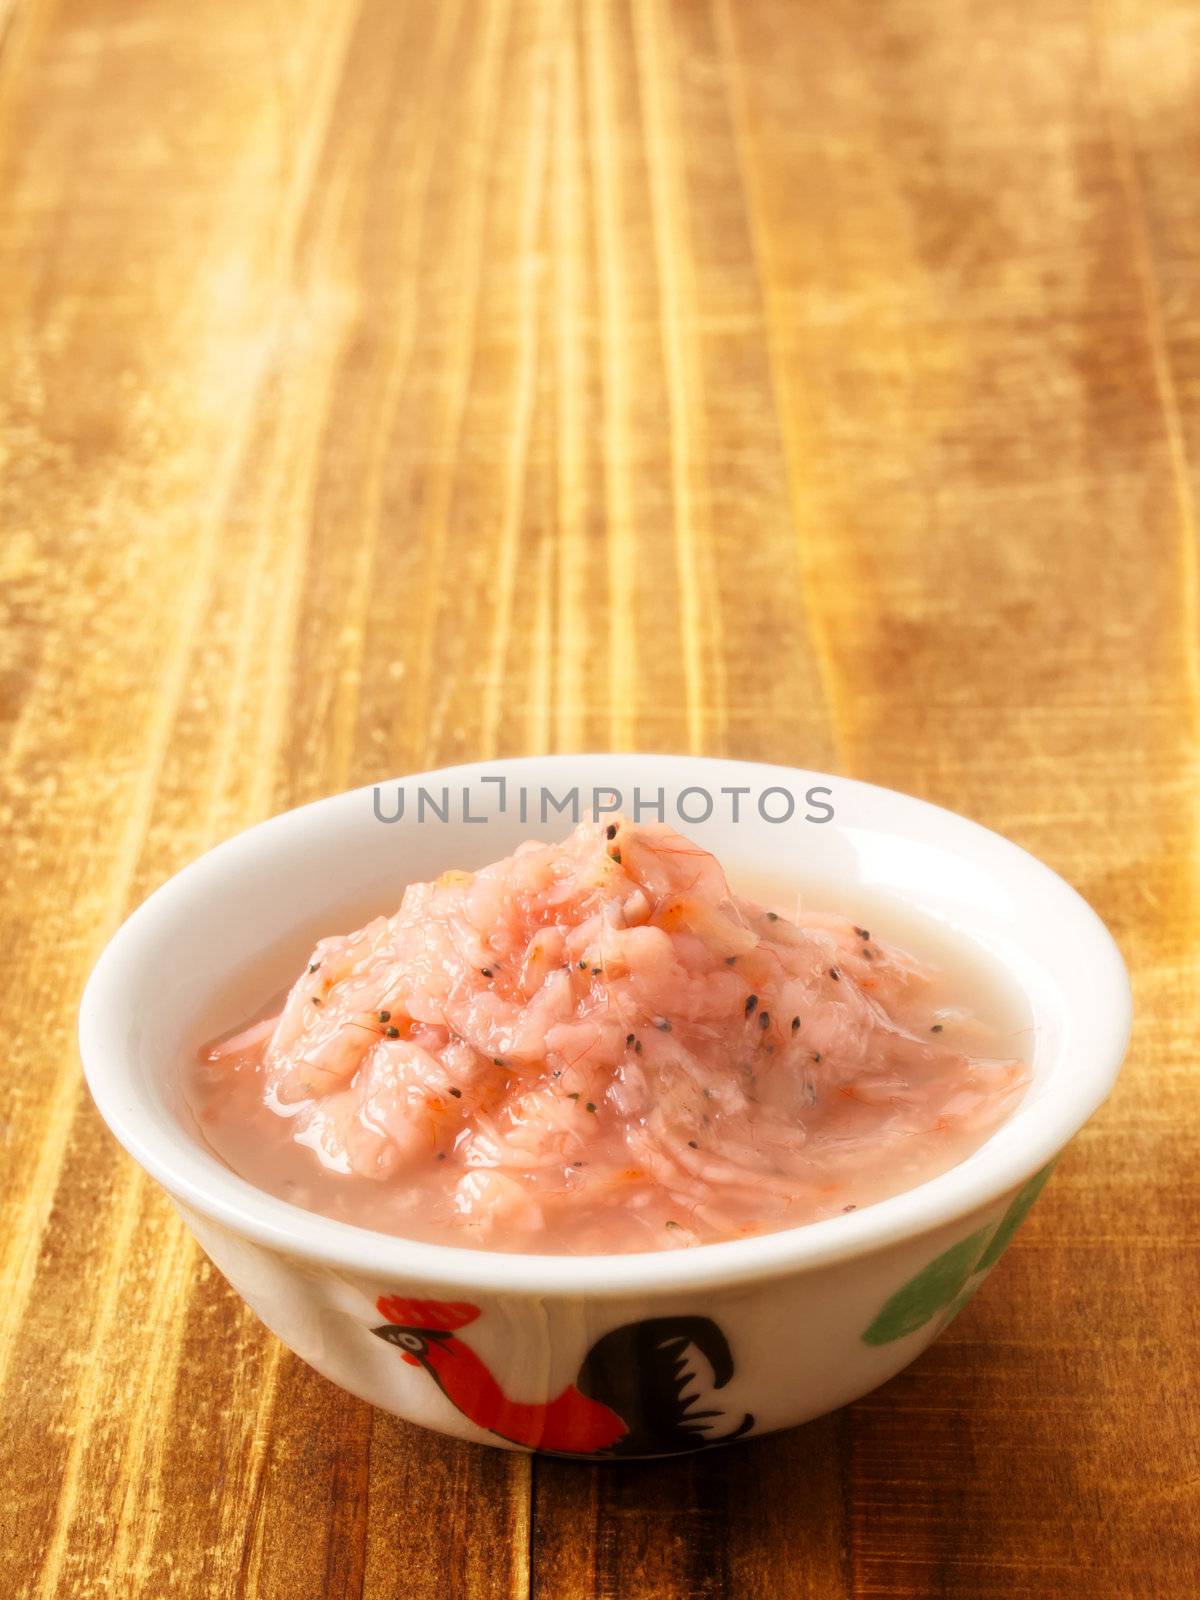 fermented shrimps by zkruger